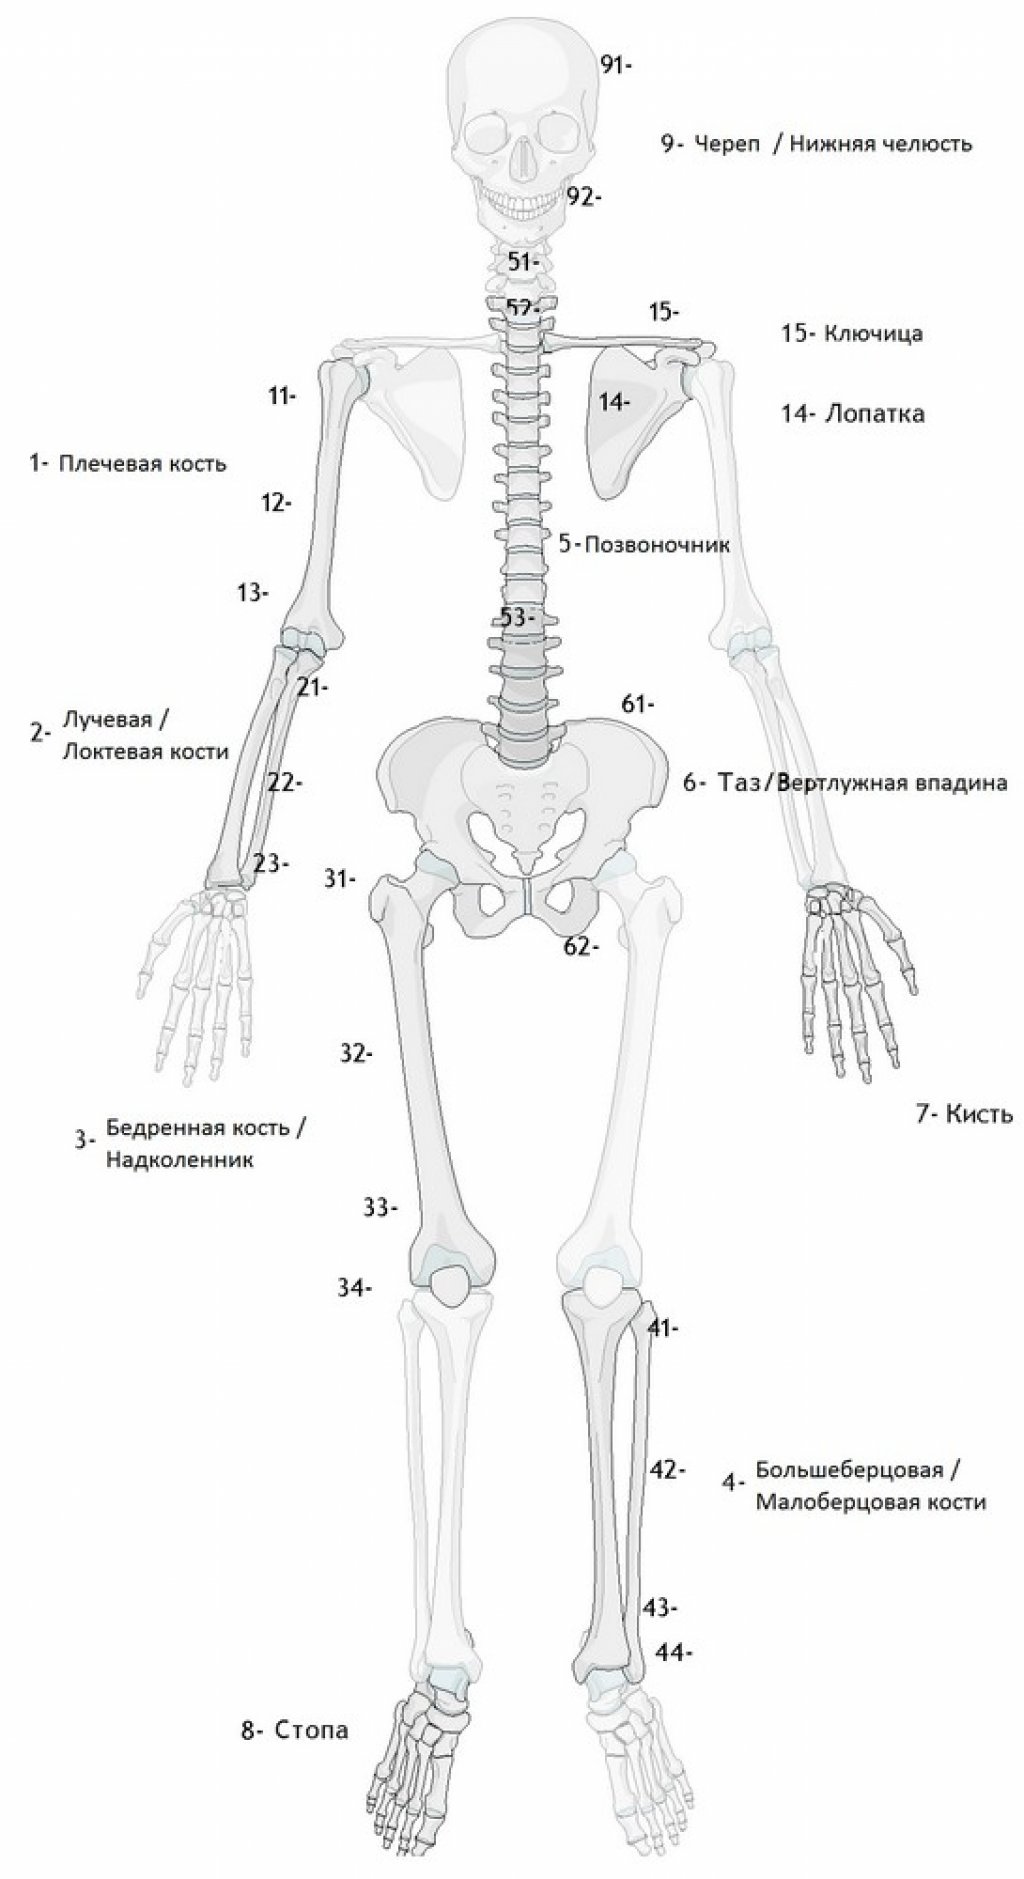 Классификация переломов трубчатых костей AO (Мюллера)